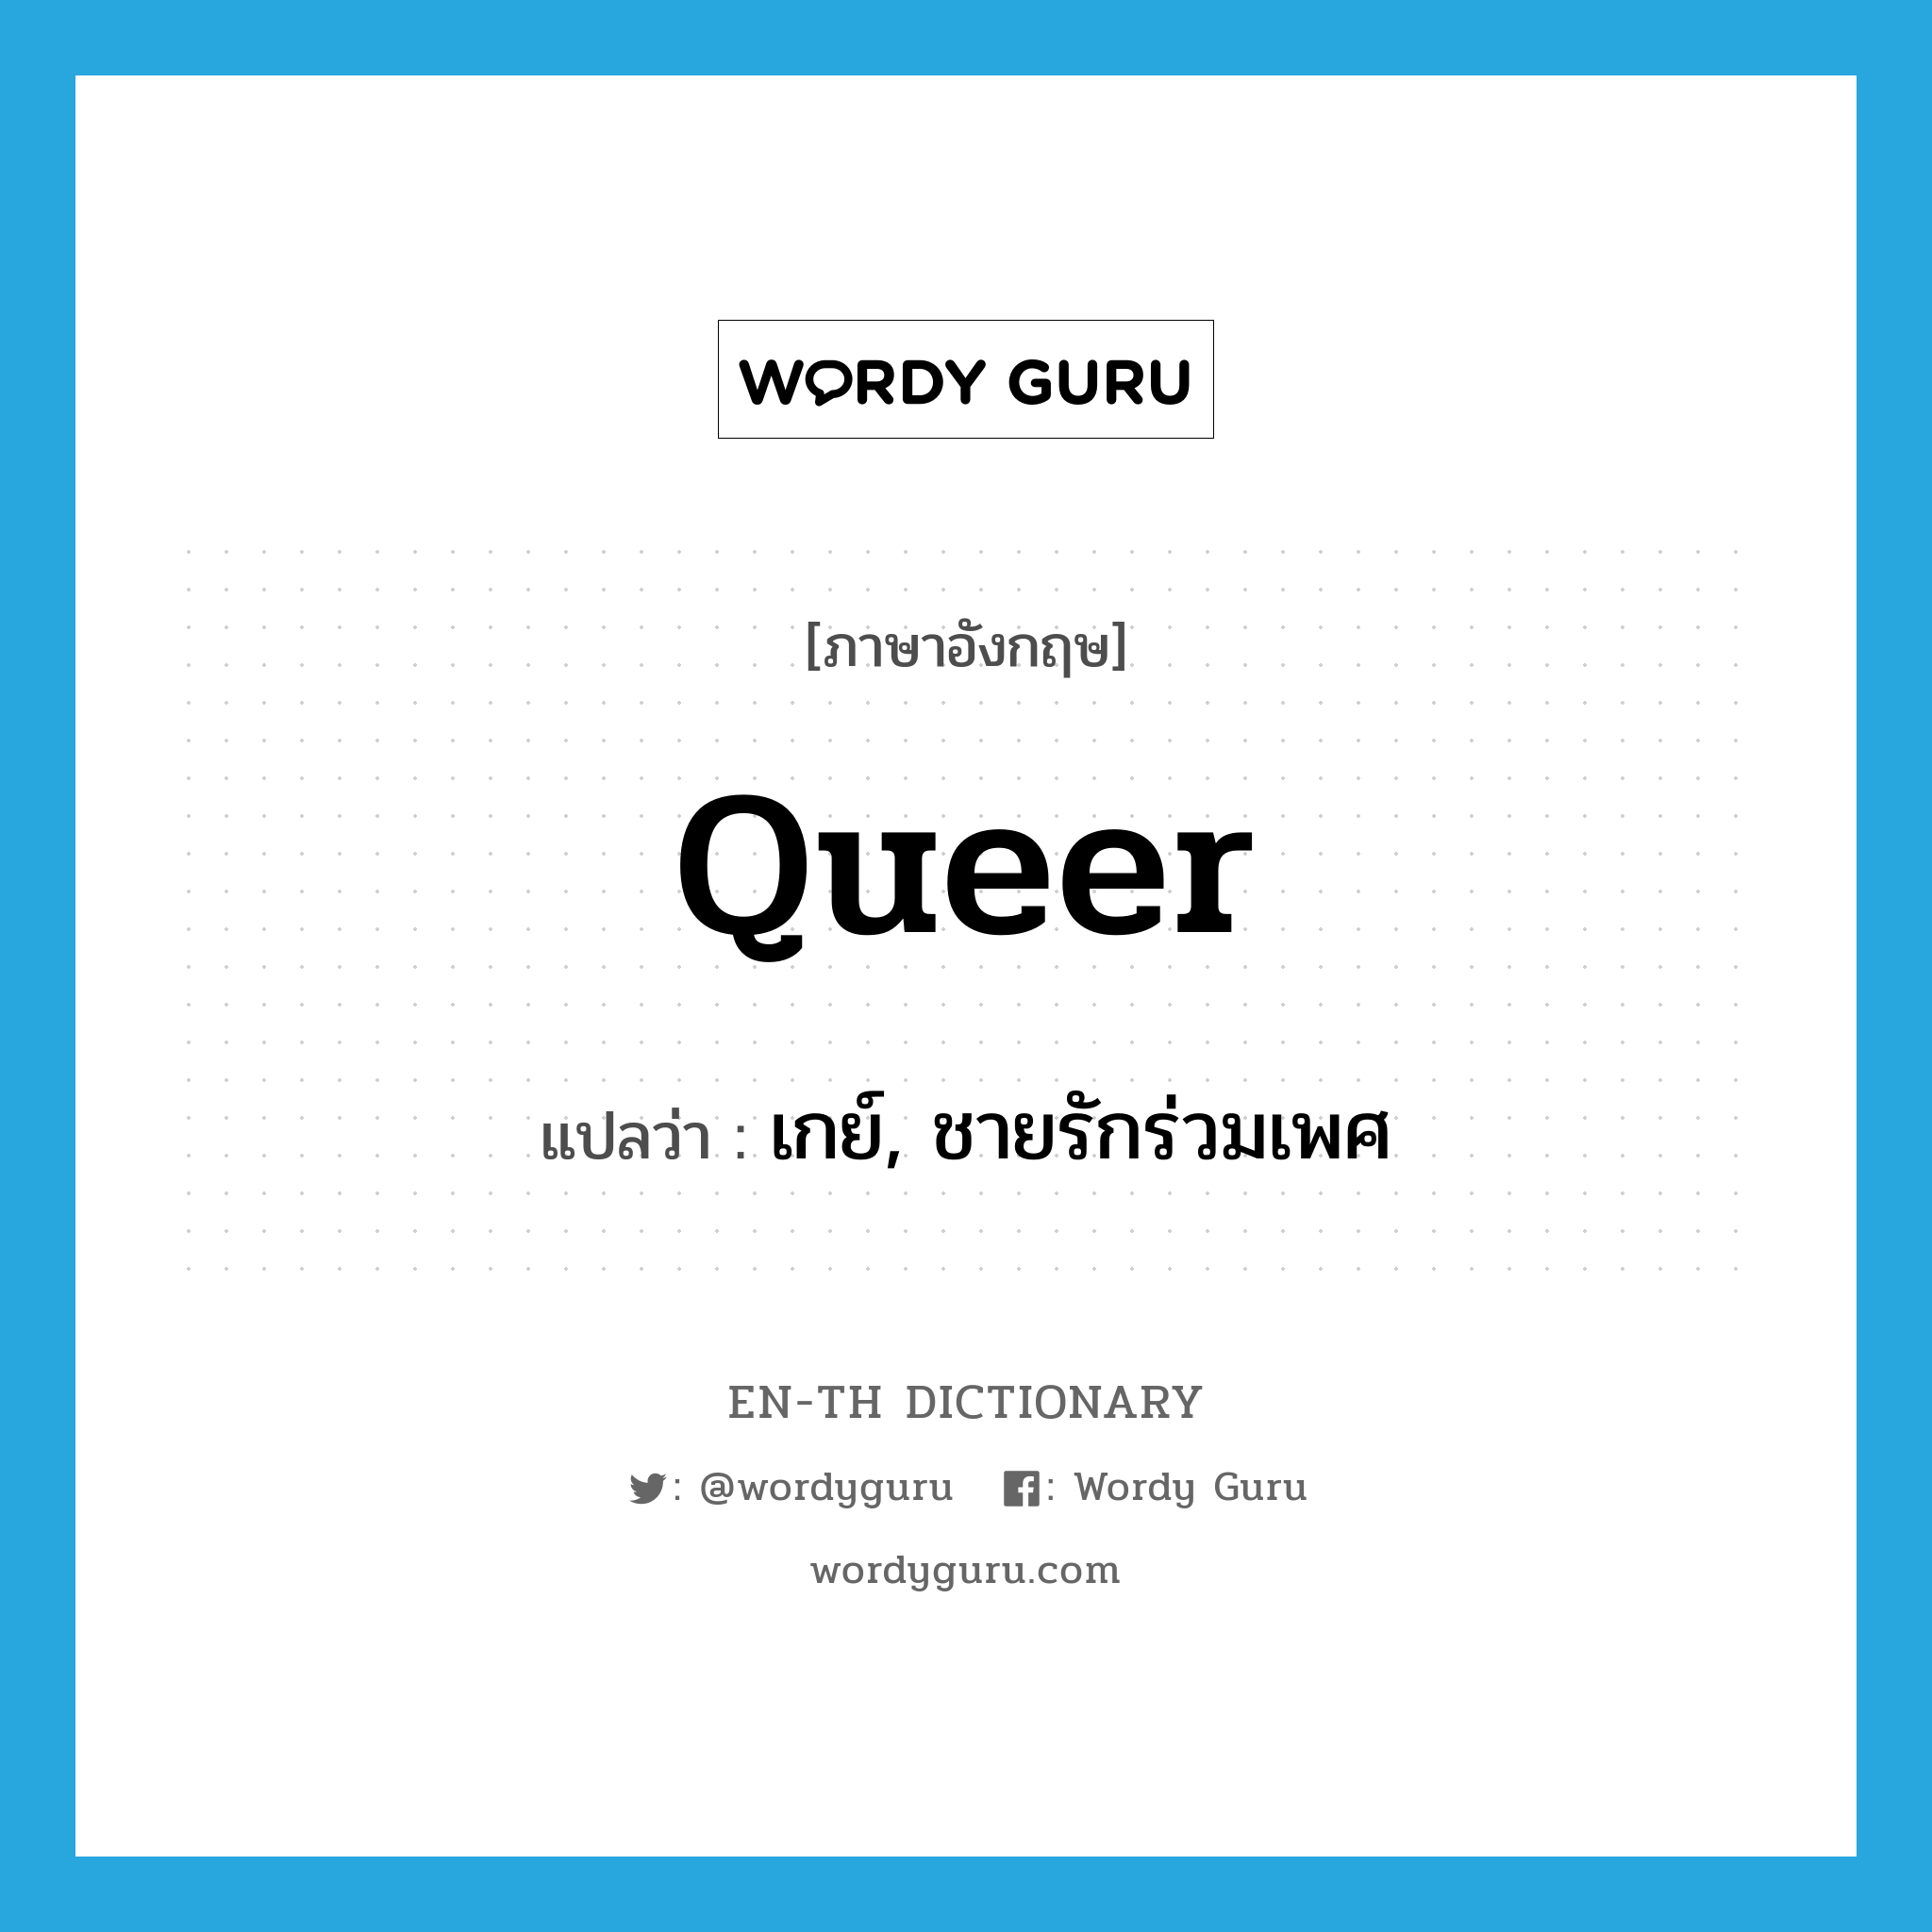 เกย์, ชายรักร่วมเพศ ภาษาอังกฤษ?, คำศัพท์ภาษาอังกฤษ เกย์, ชายรักร่วมเพศ แปลว่า queer ประเภท SL หมวด SL